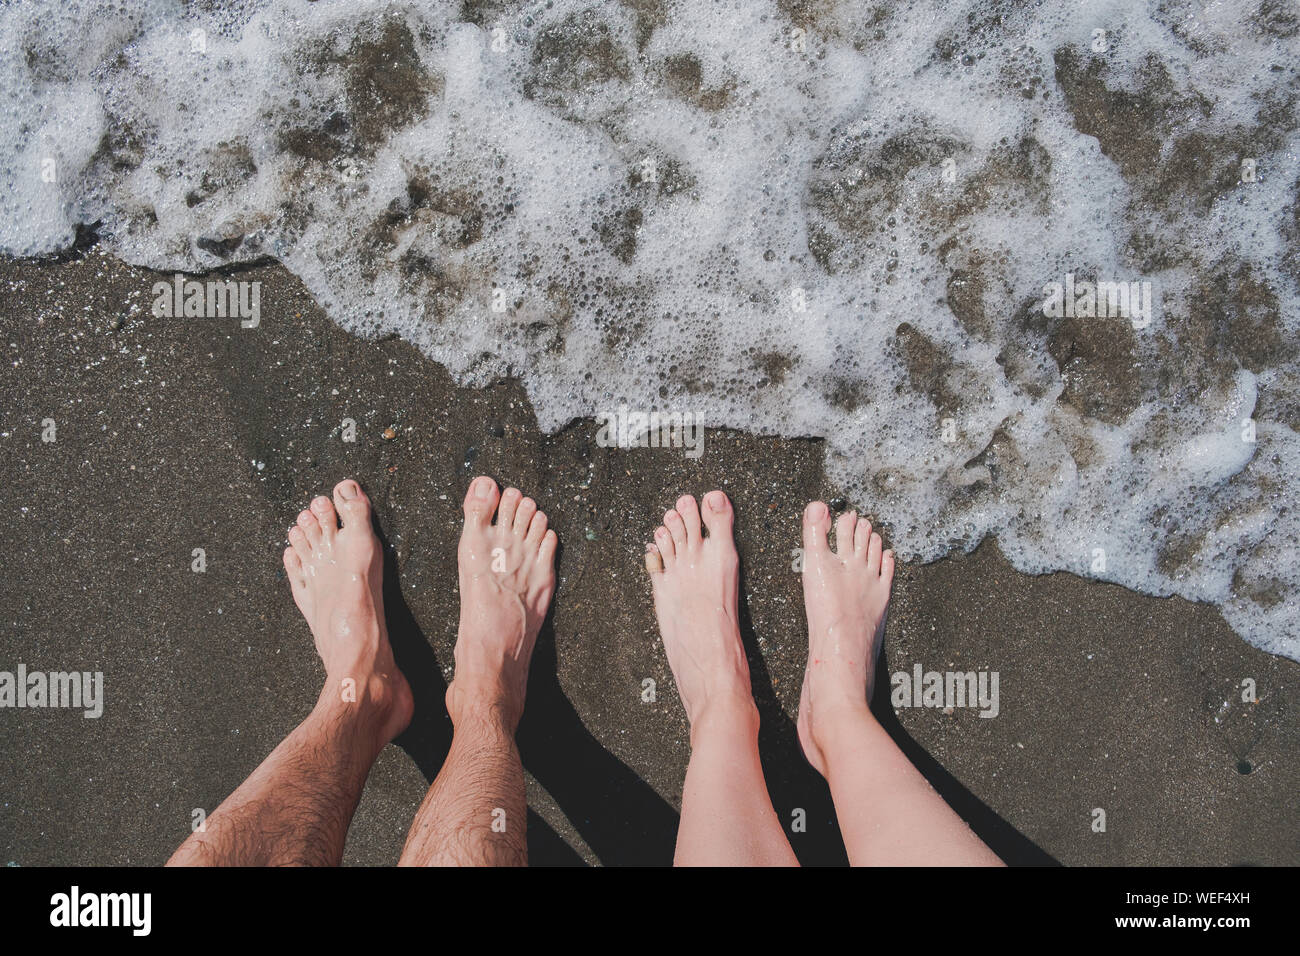 Mann und Frau stehen auf Kiesel am Meer, Sicht. Männliche und weibliche Beine am Strand, Ansicht von oben, Schwimmen im Meer und Sommerurlaub Konzept. Stockfoto